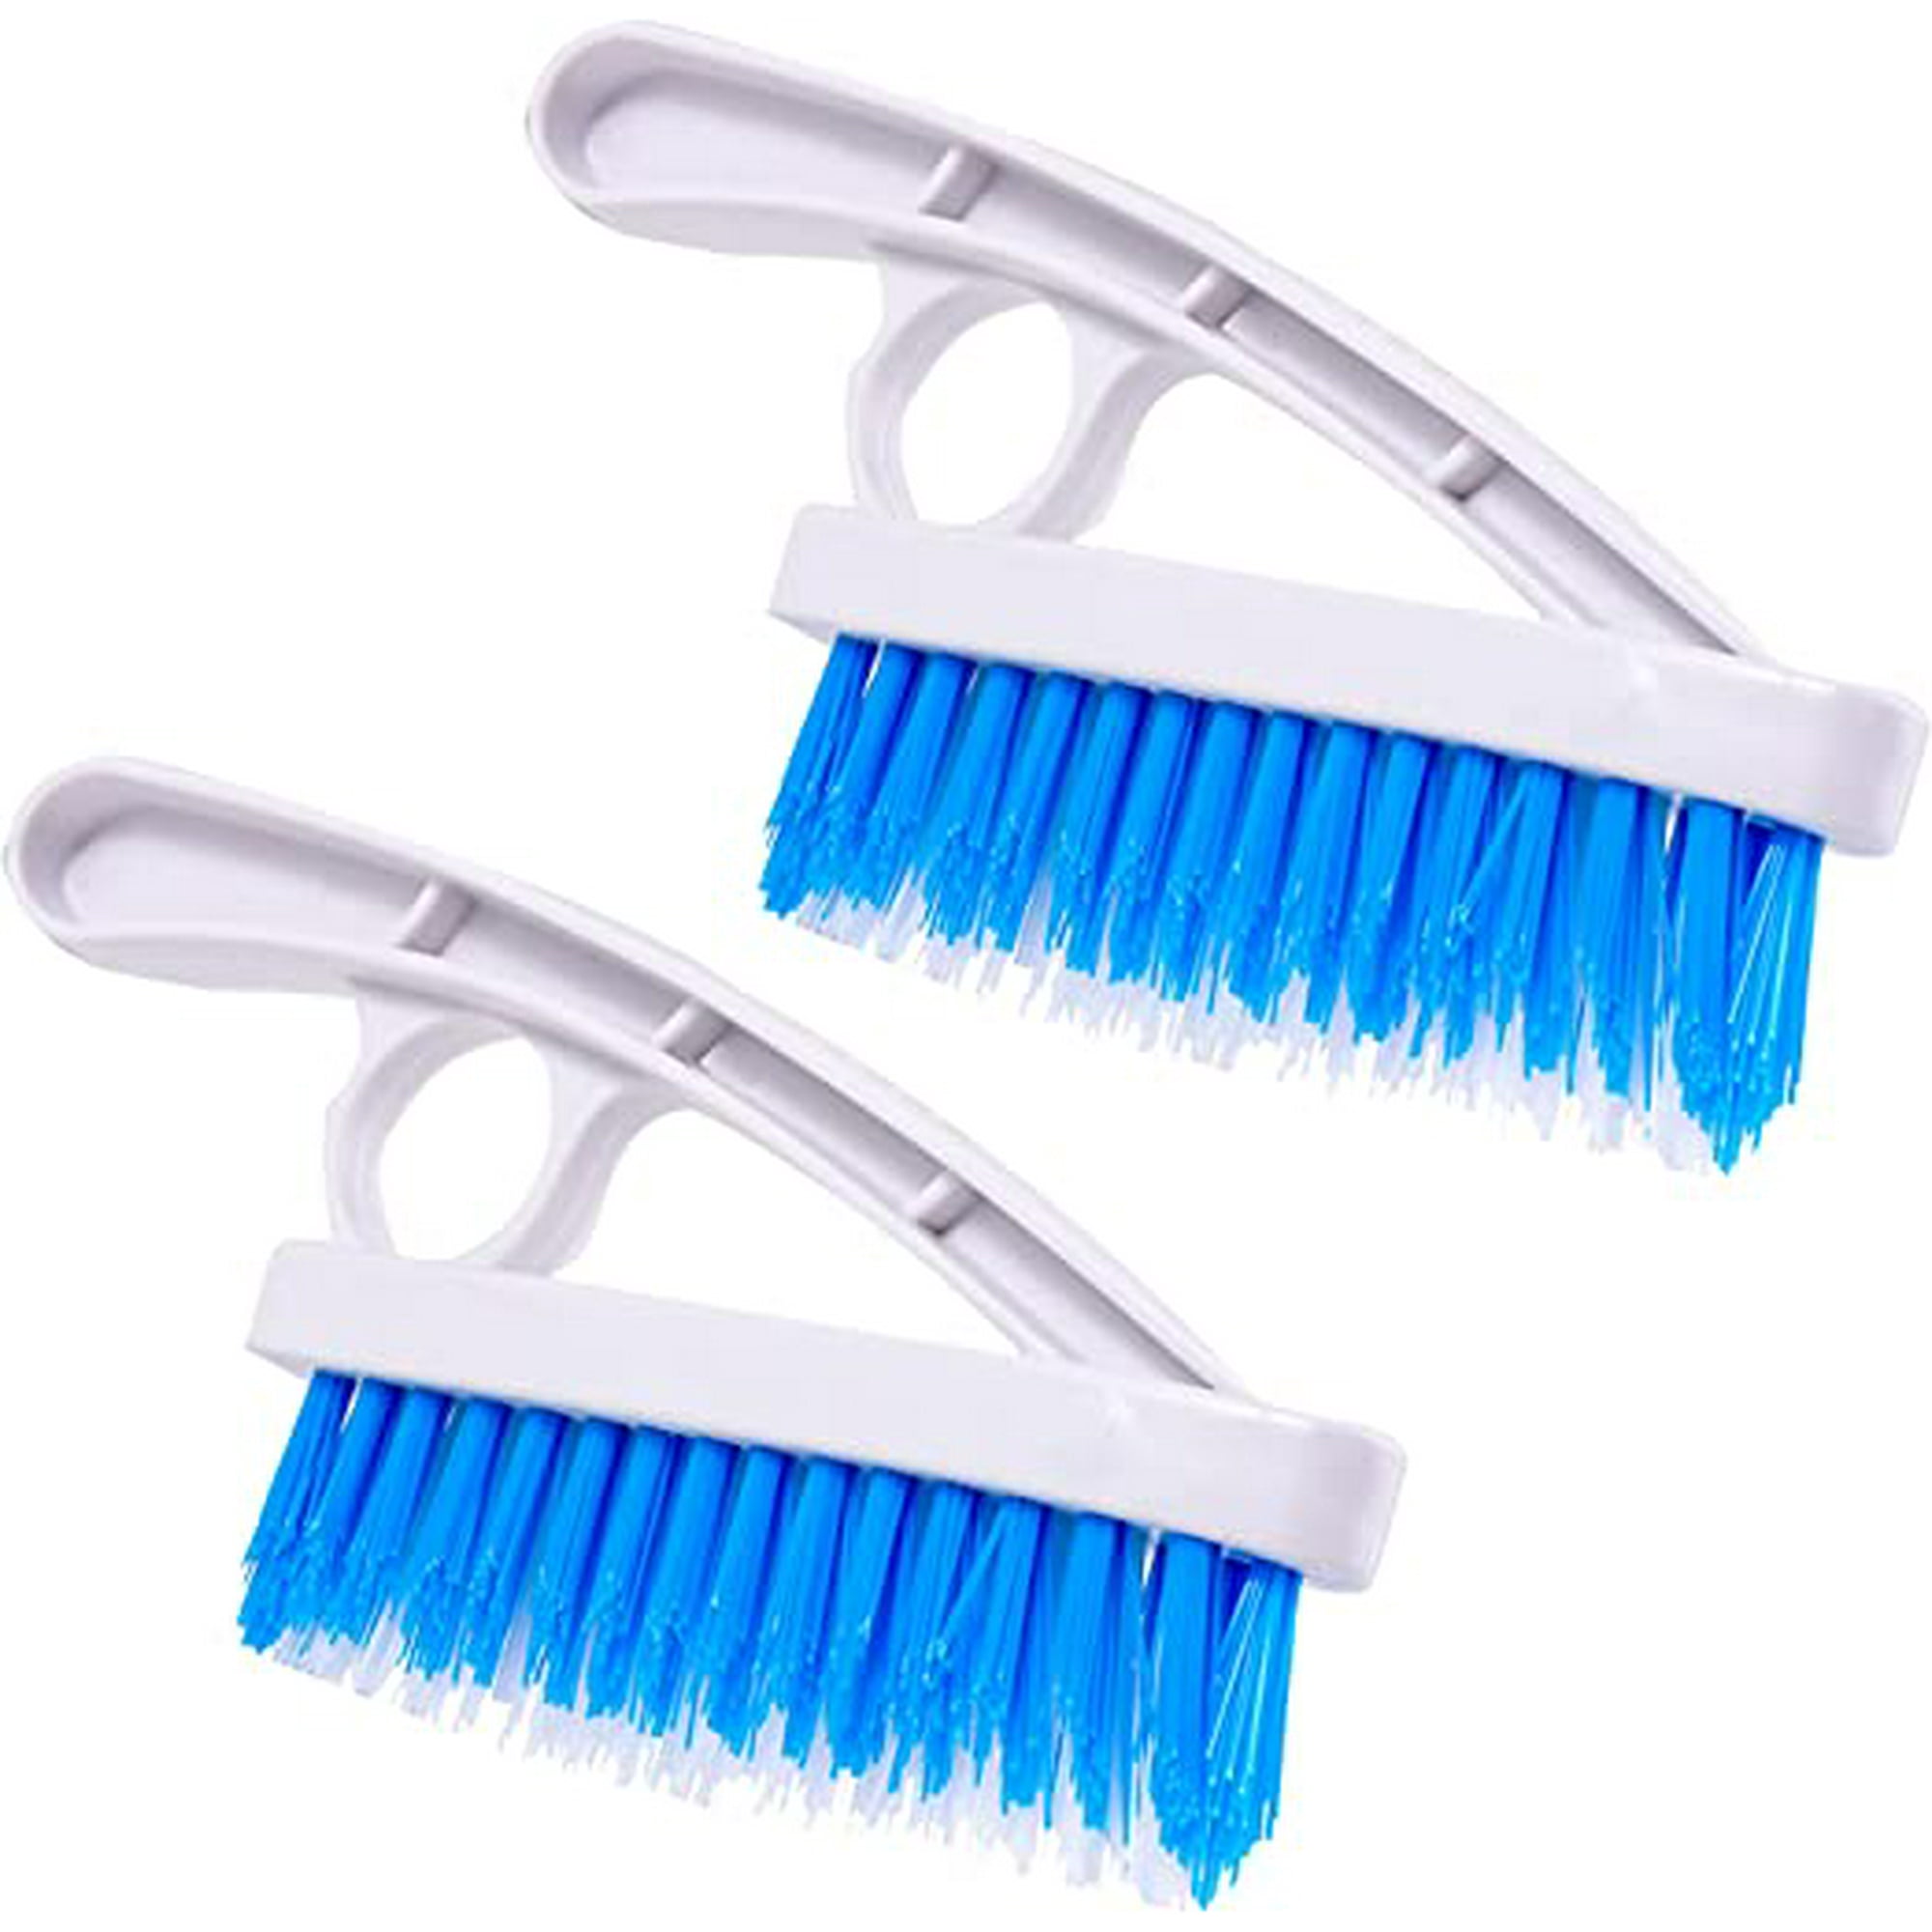 Cepillo limpiador de lechada para limpieza de ducha, fregado de líneas de  suelo, juntas de azulejos, cepillo de limpieza de cocina